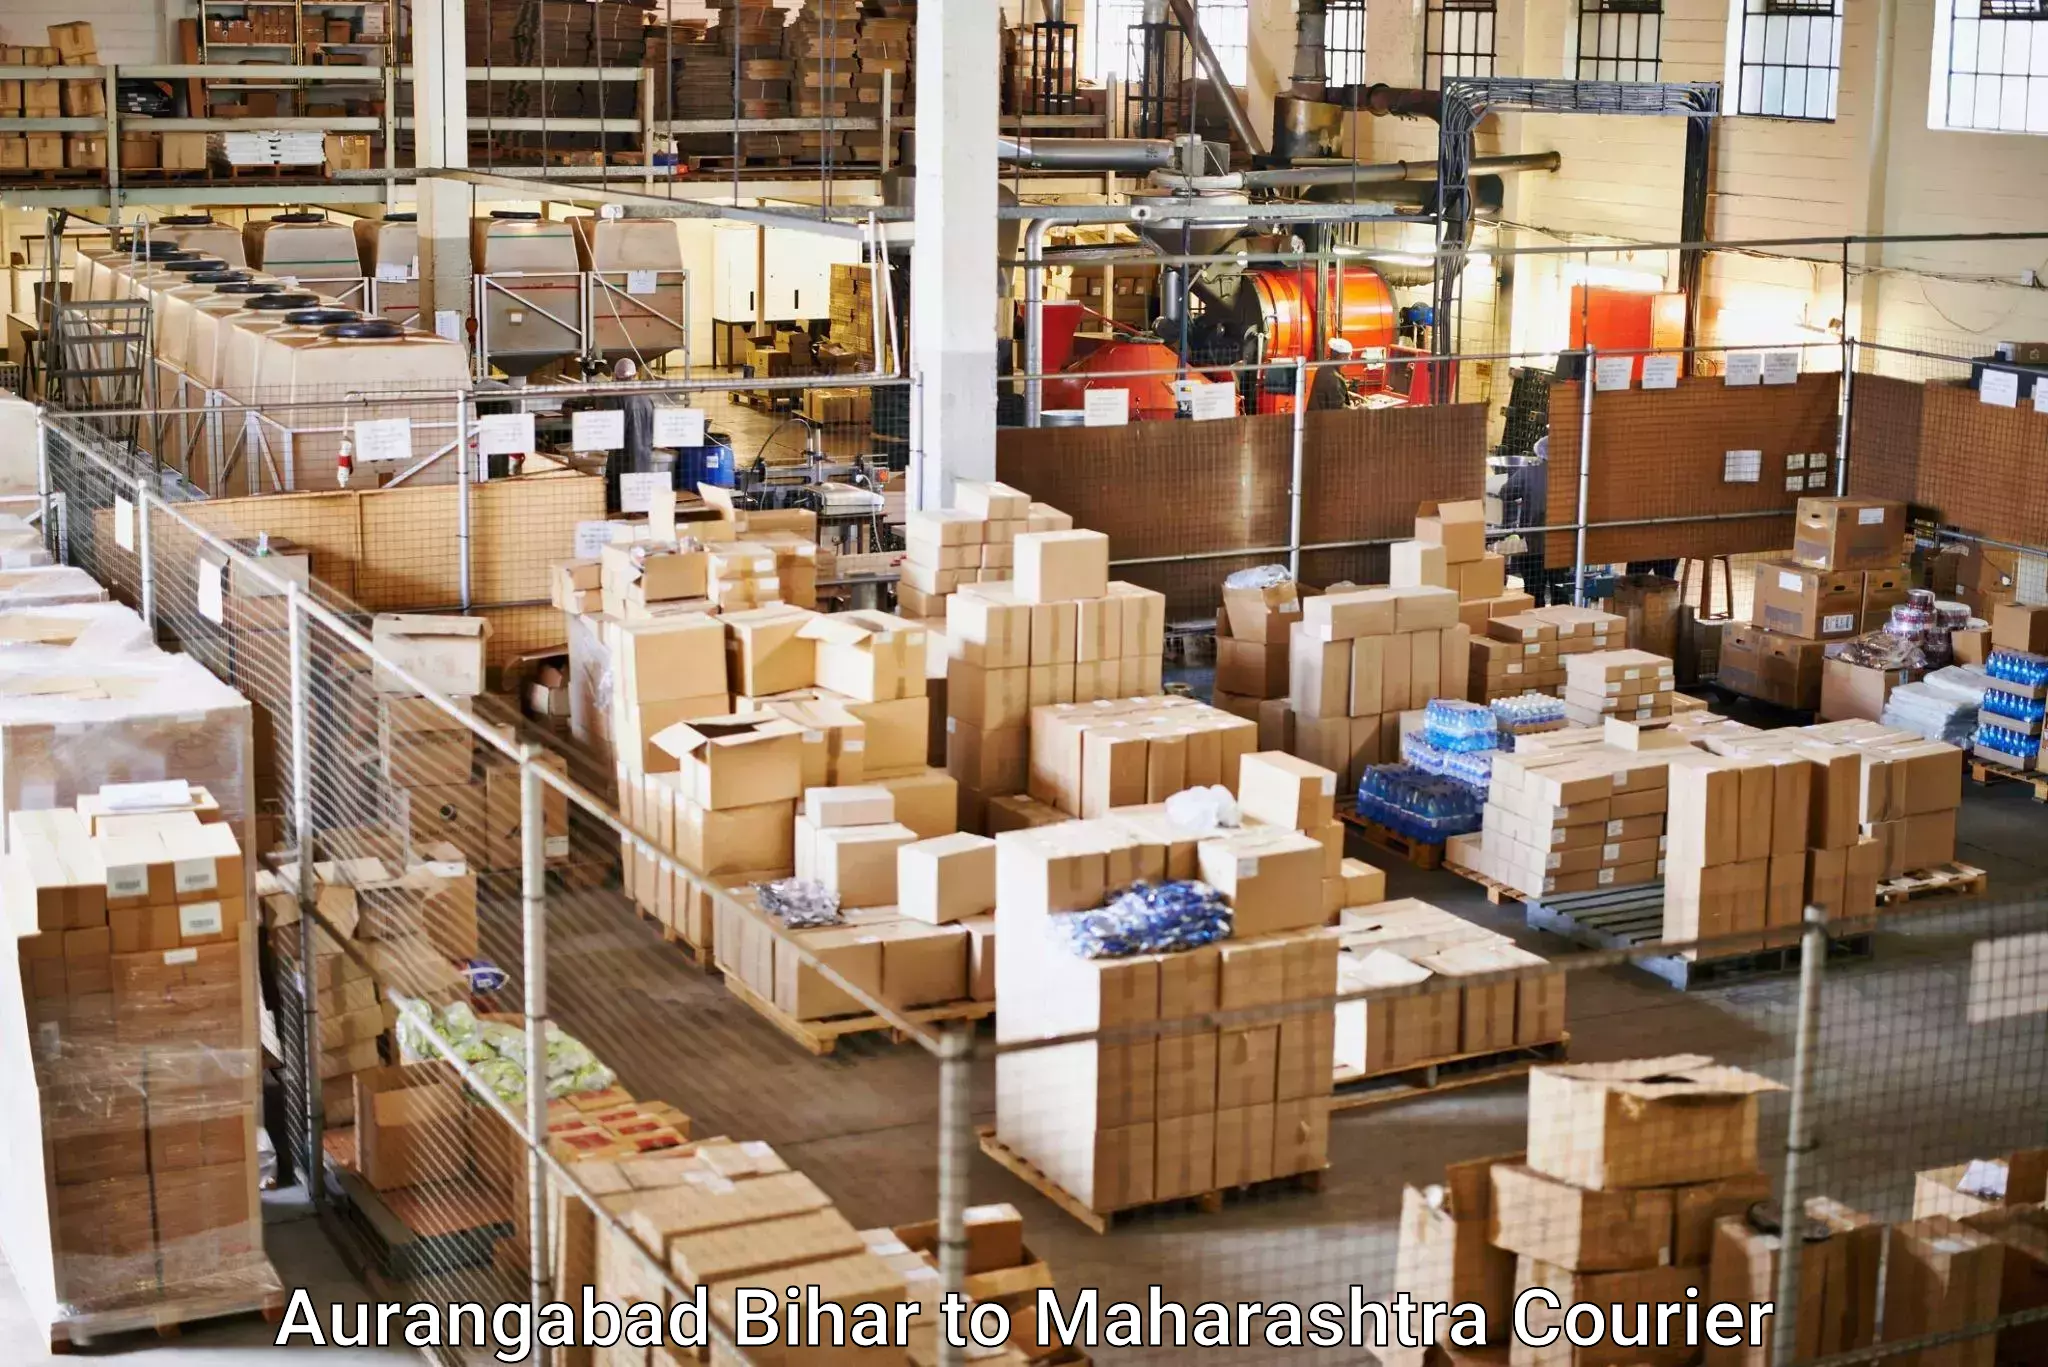 Delivery service partnership Aurangabad Bihar to Dahanu